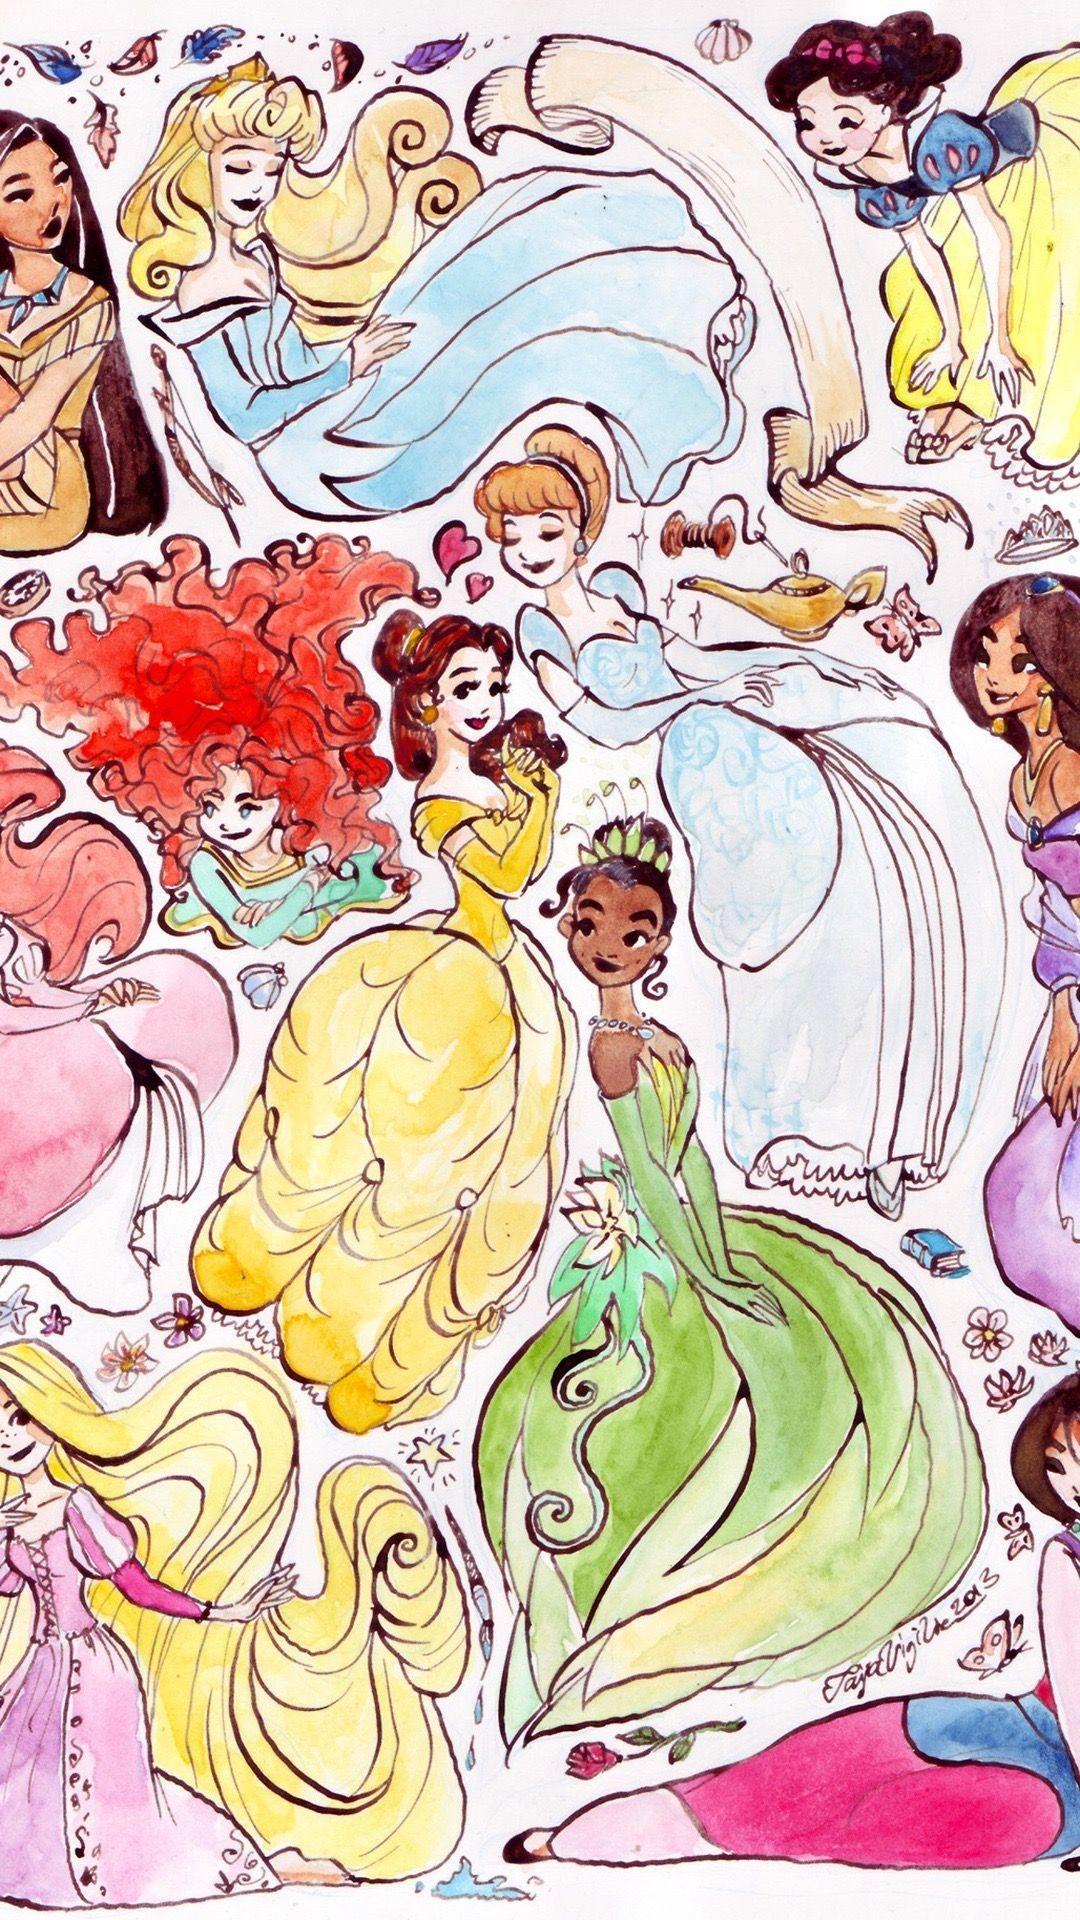 Disney Princesses iPhone Wallpaper Free Disney